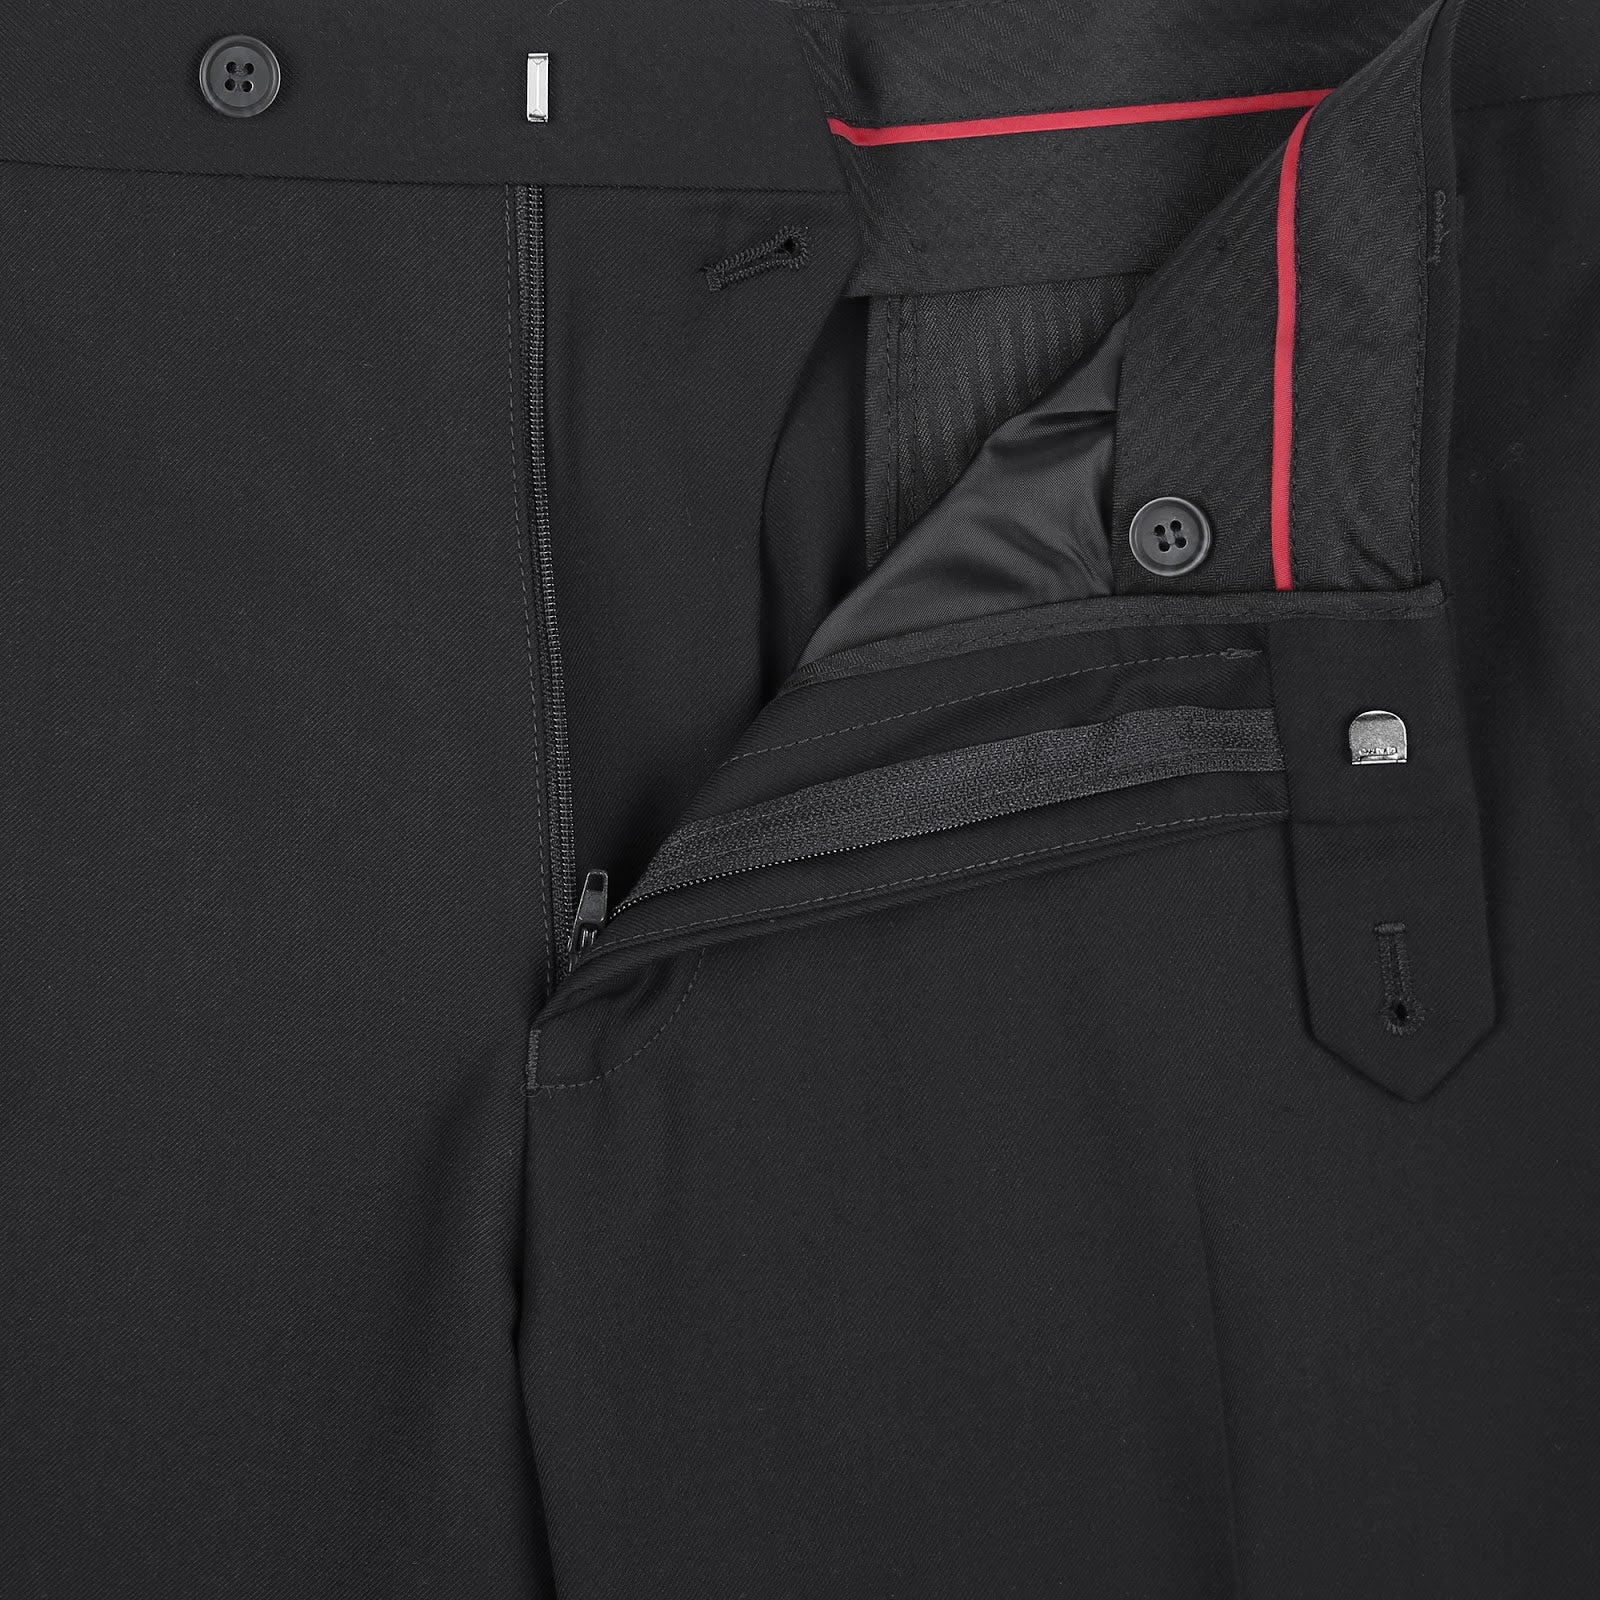 RENOIR Black 2-Piece Classic Fit Single Breasted Notch Lapel Suit 201-1